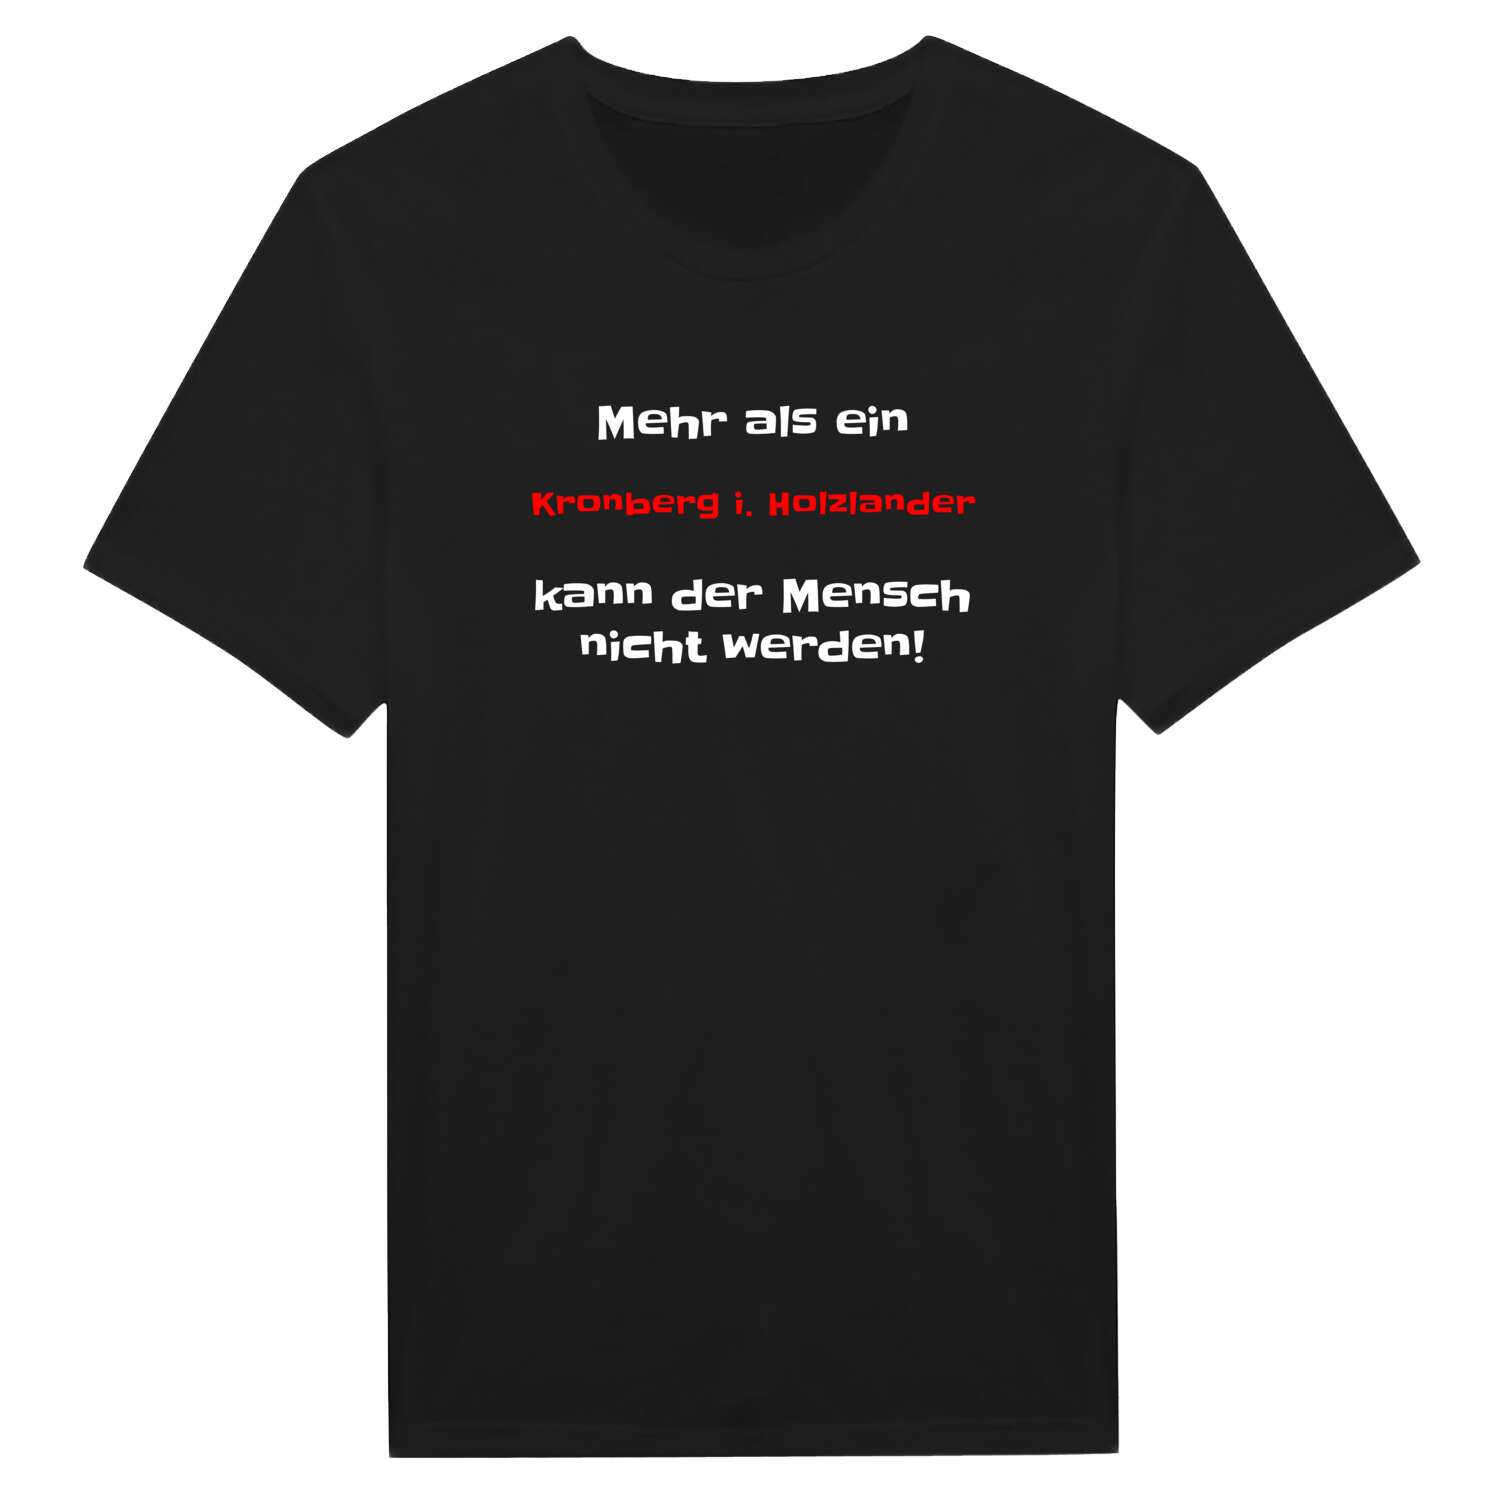 Kronberg i. Holzland T-Shirt »Mehr als ein«